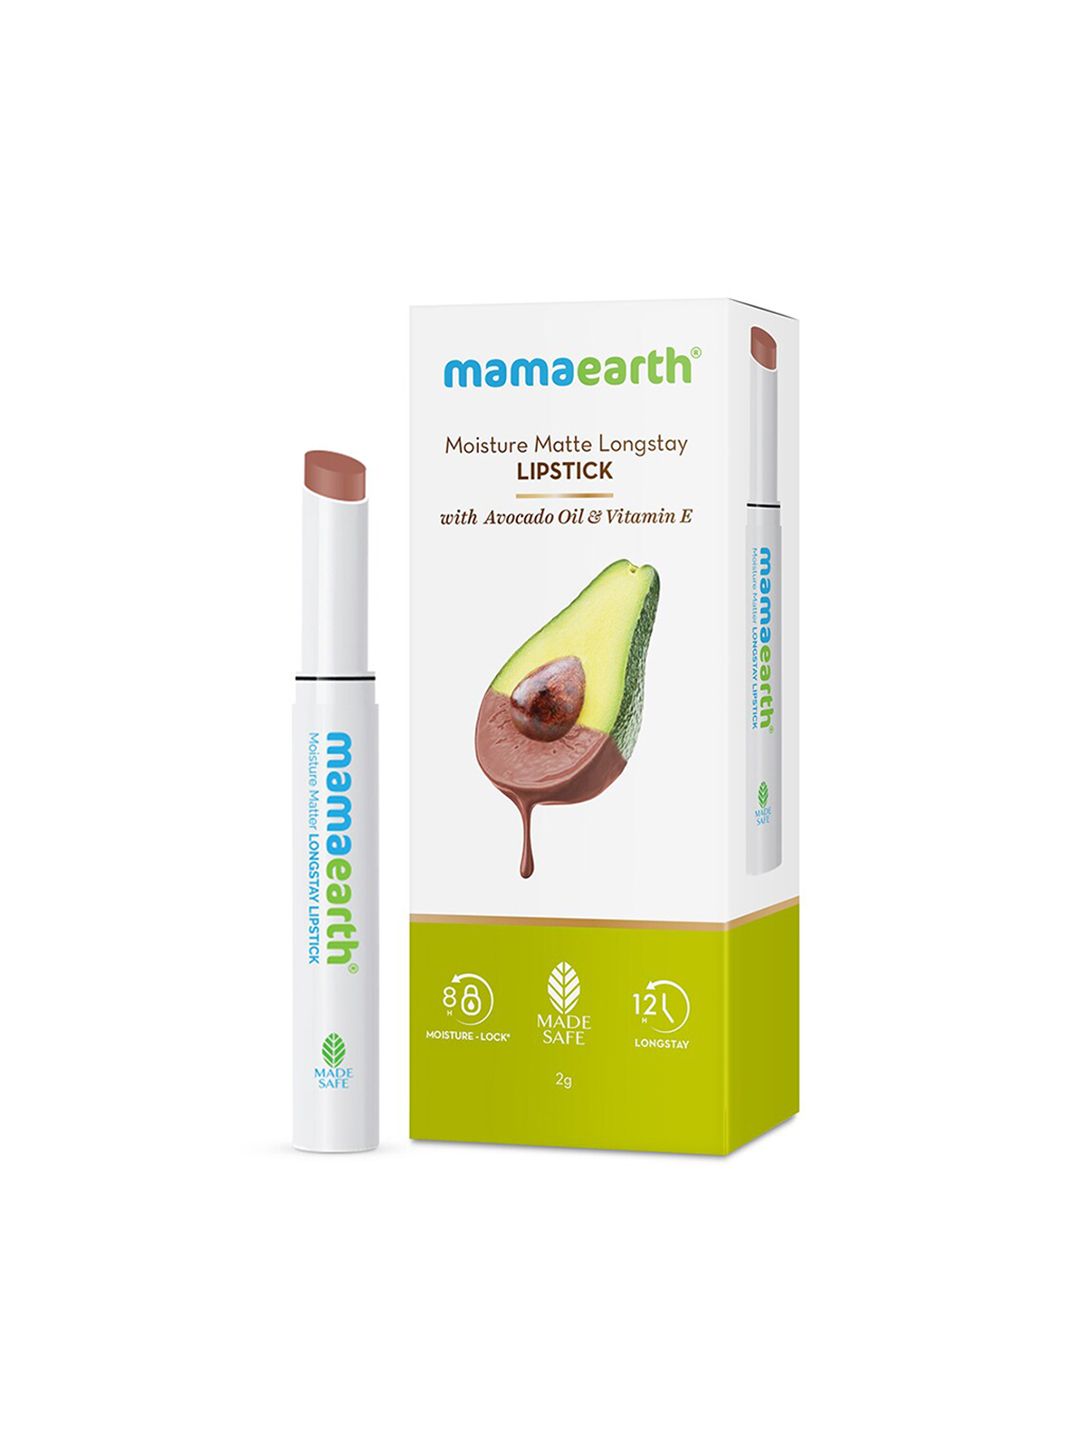 Mamaearth Moisture Matte Longstay Lipstick - Espresso Brown 09 Price in India